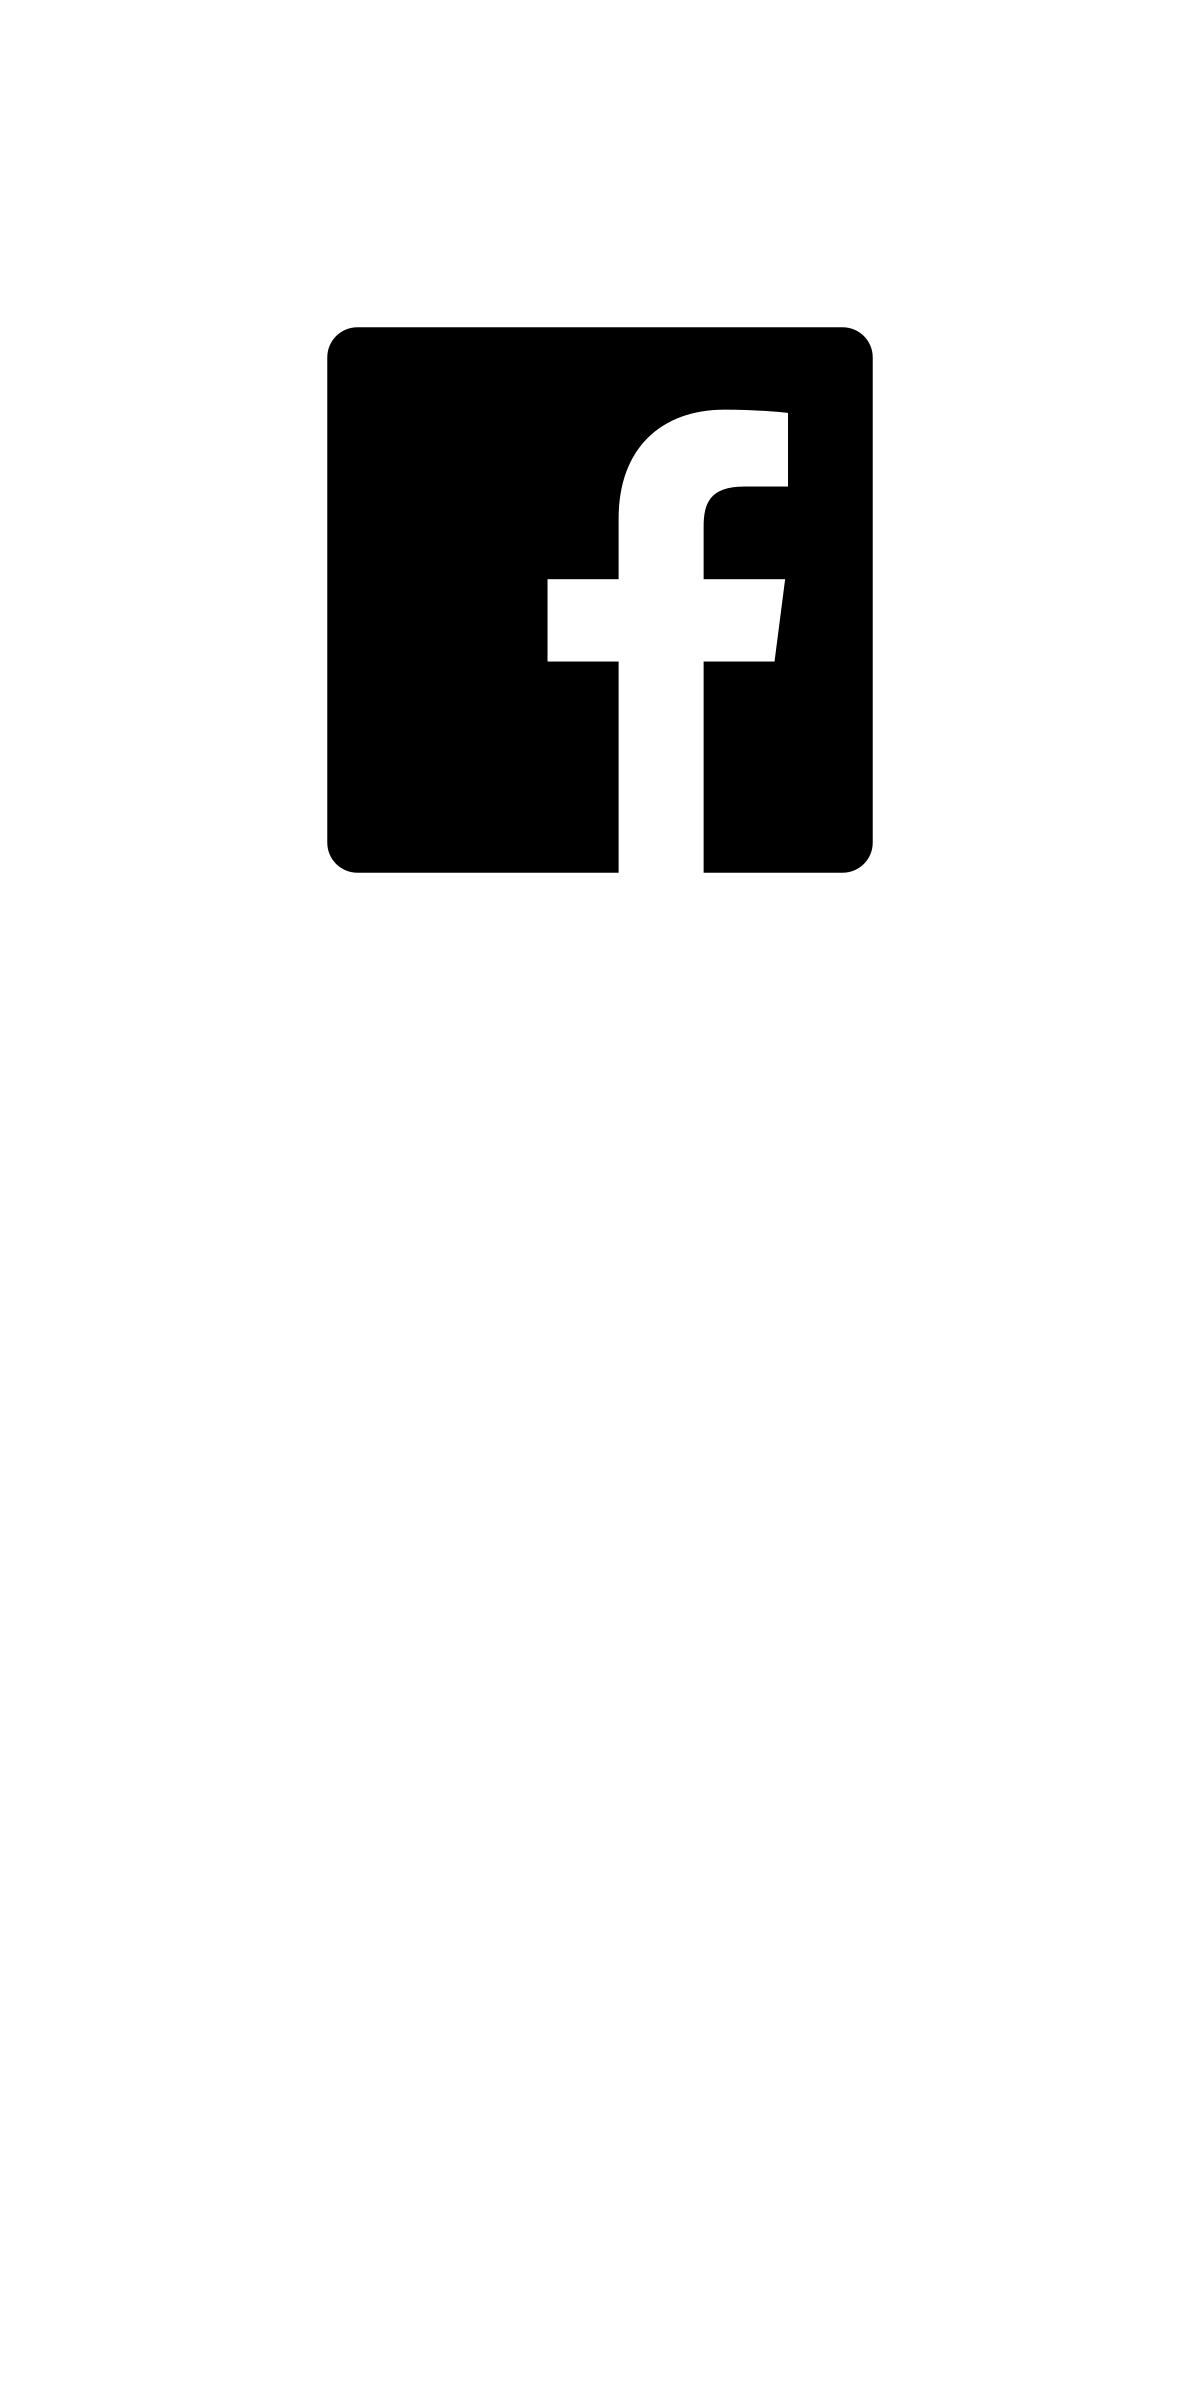 Facebook logo черный и белый PNG прозрачный образ